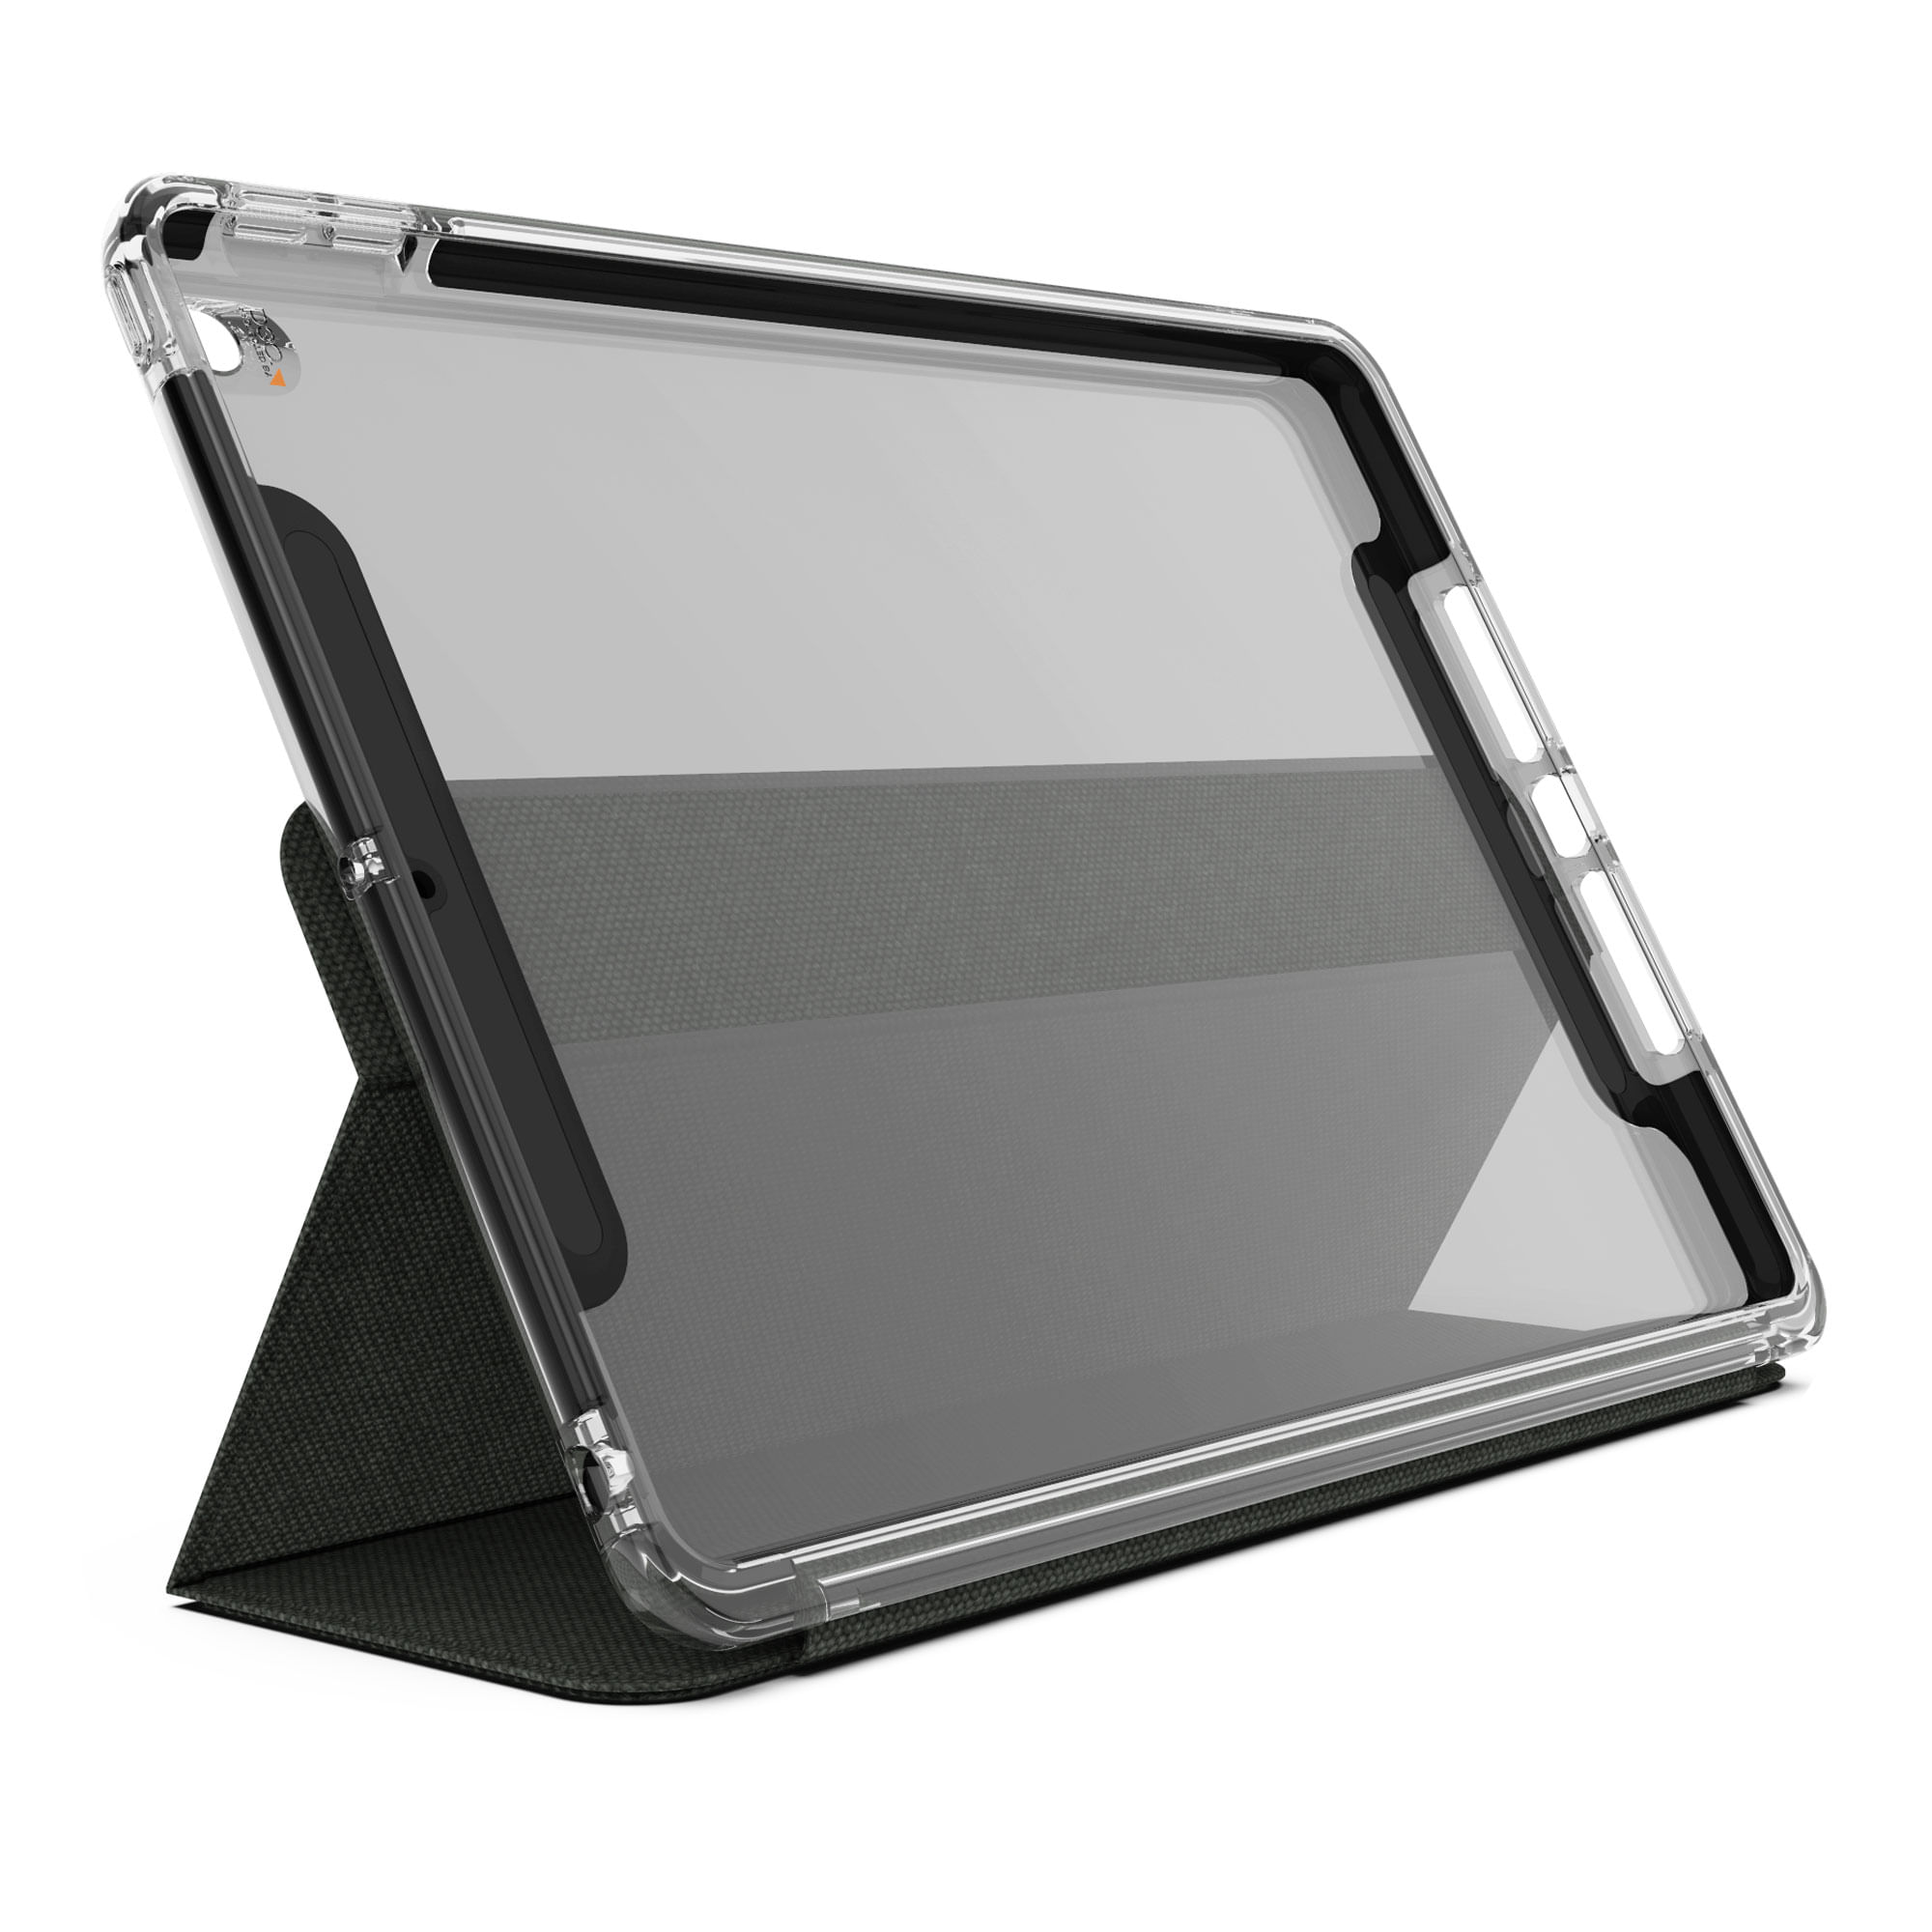 TFY iPad 4 / iPad 3 / iPad 2 Soporte para reposacabezas de coche, edición  de liberación rápida de fijación rápida - Negro